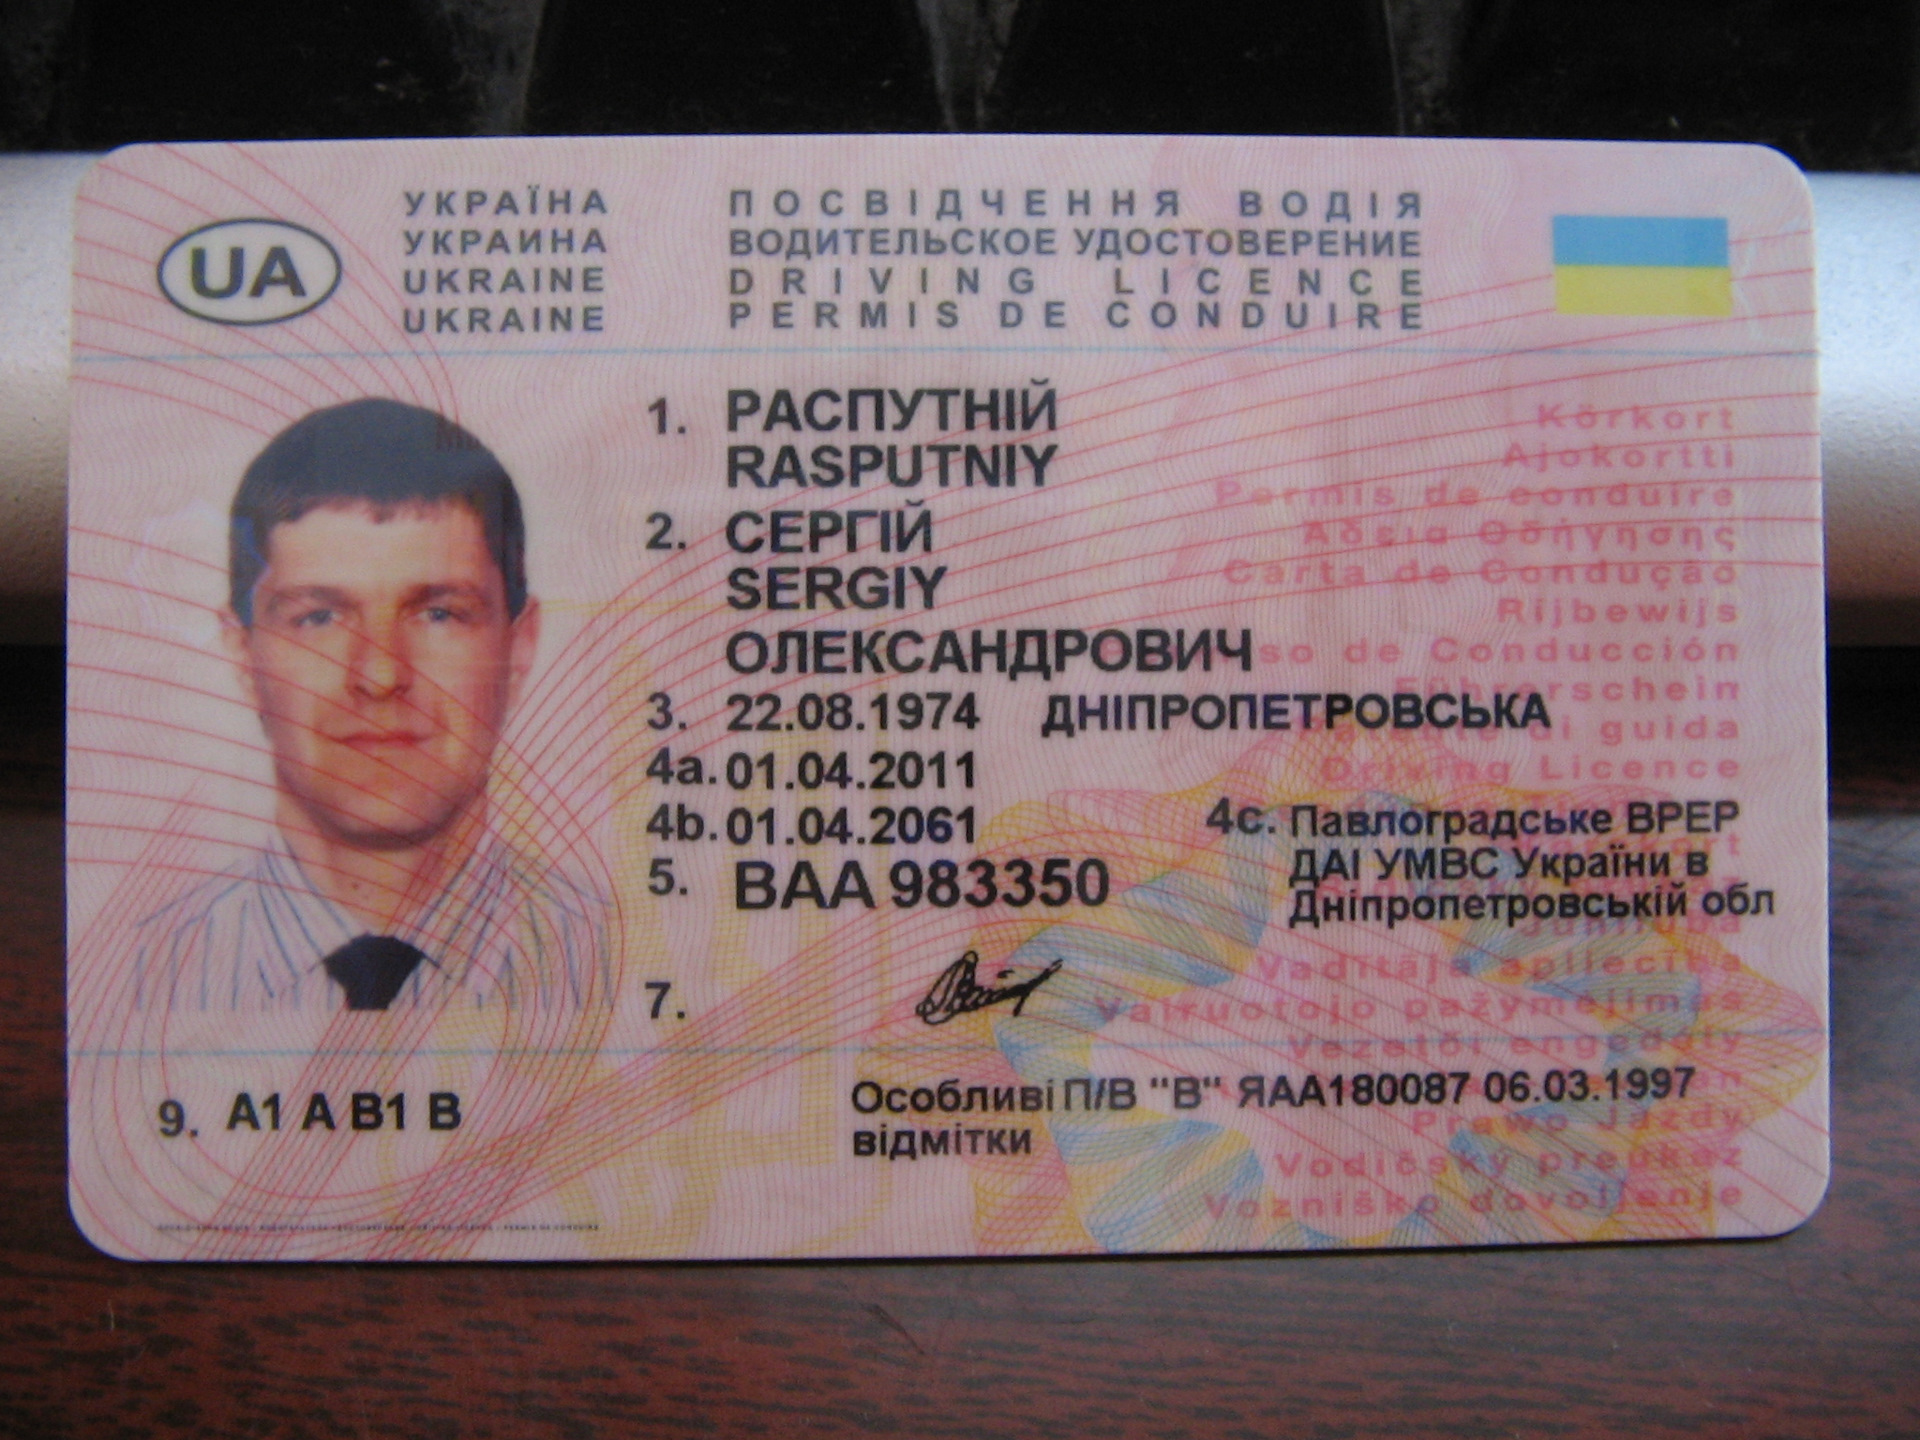 Украинское водительское удостоверение